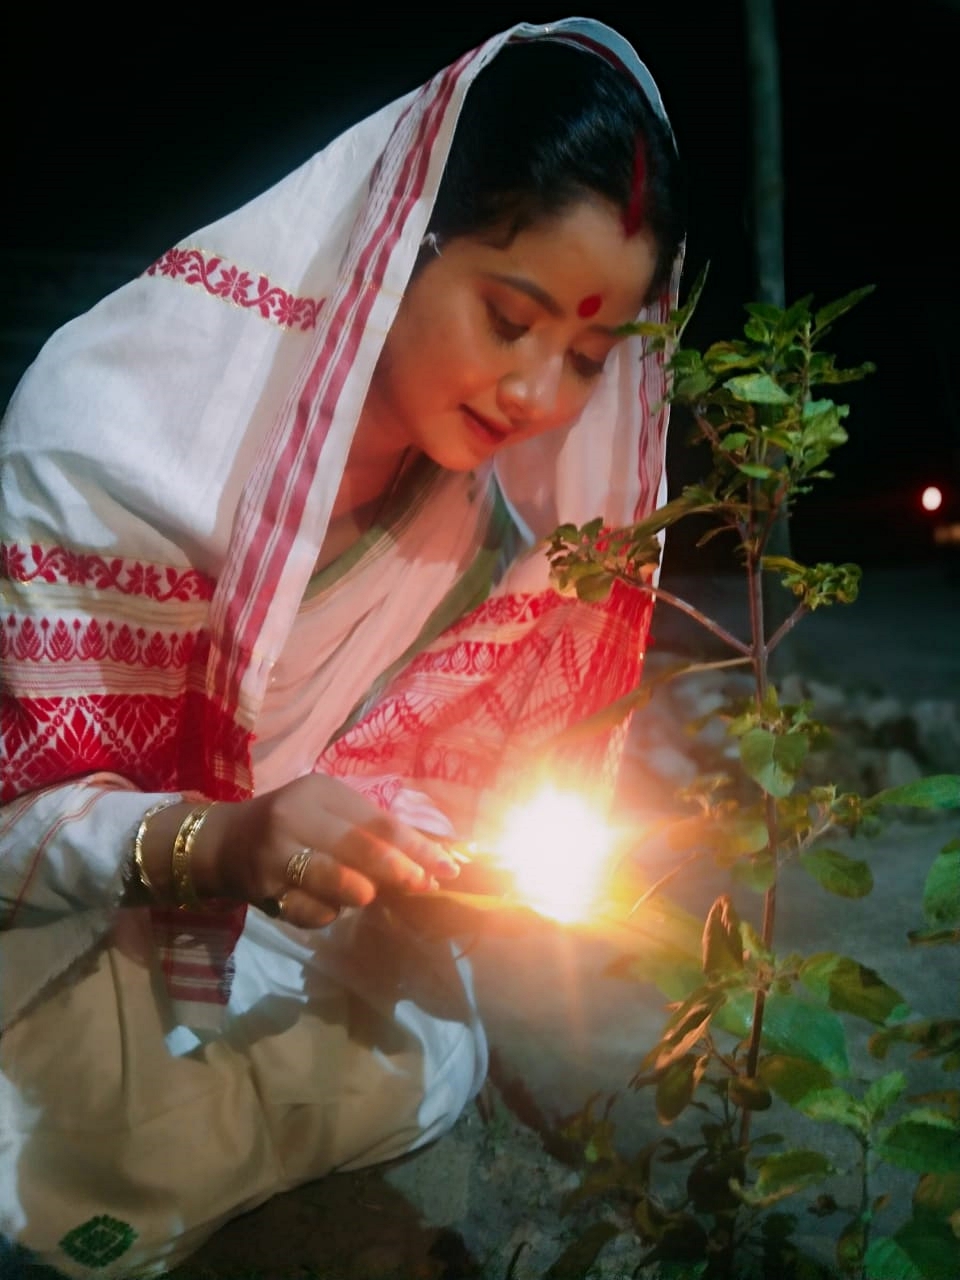 Kati bihu celebration in Assam